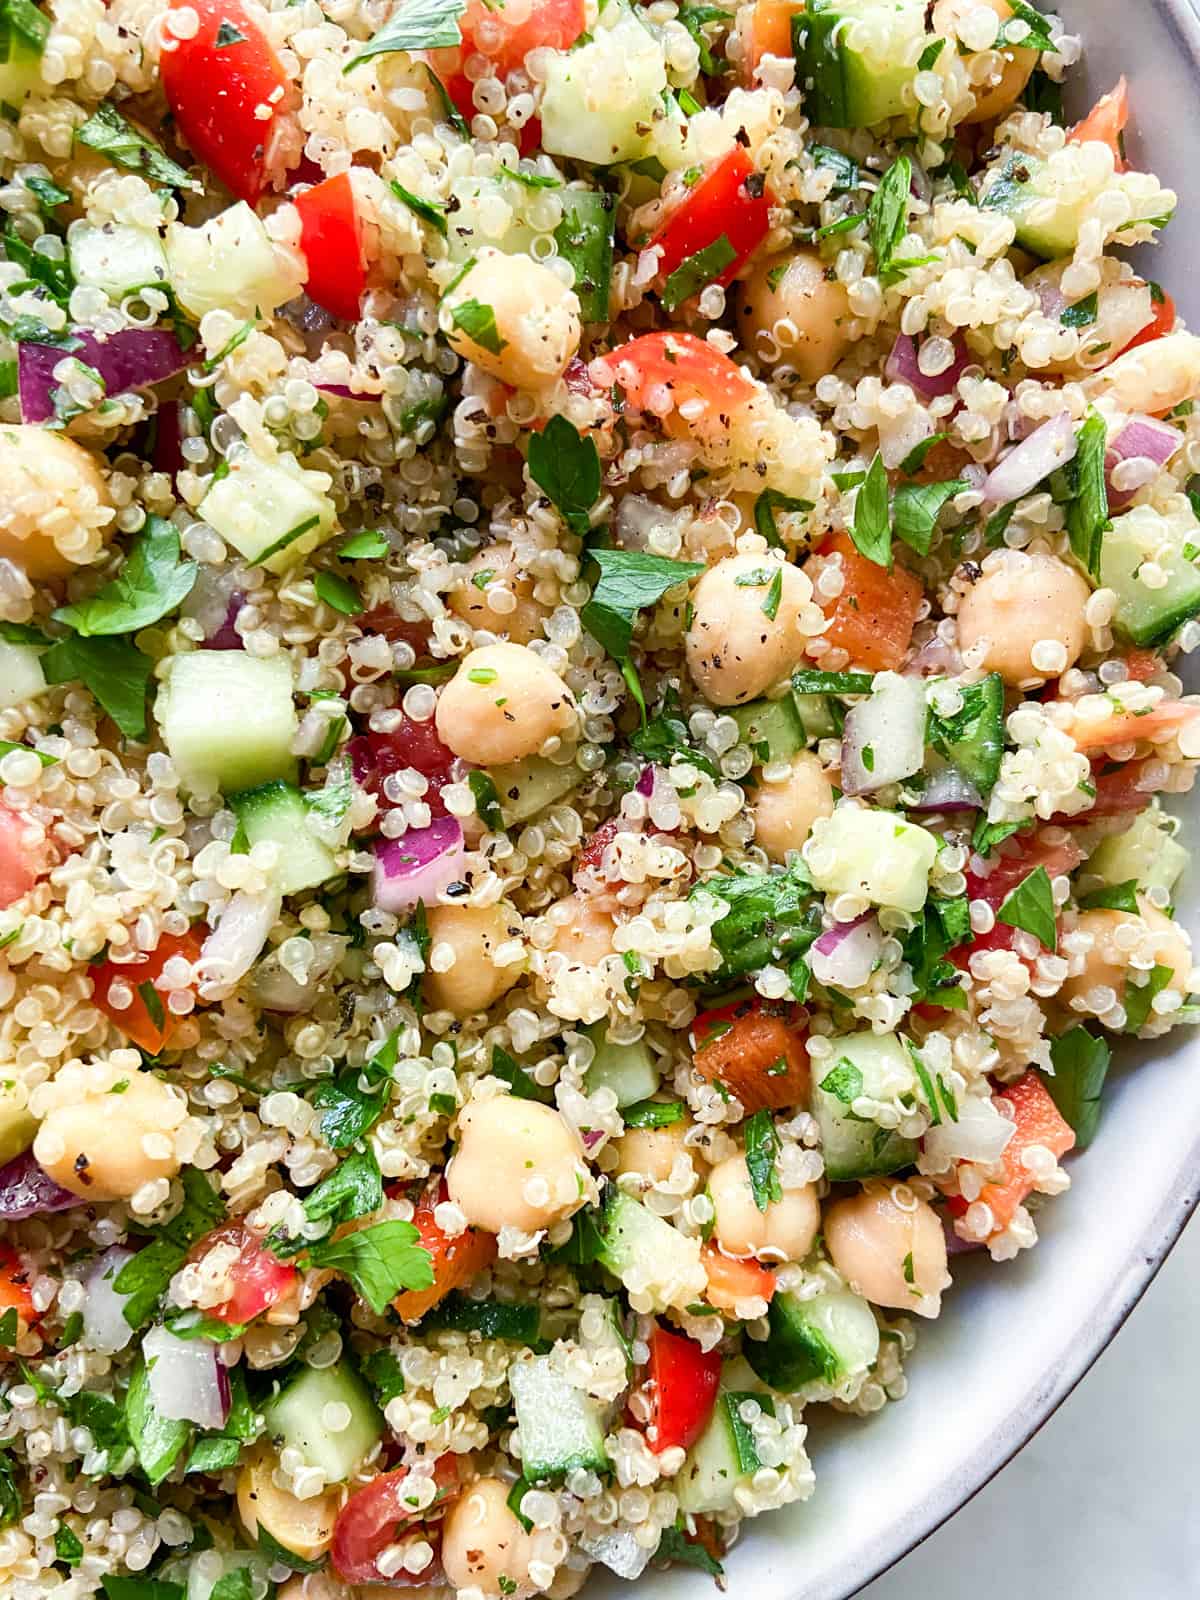 A close-up of quinoa salad.